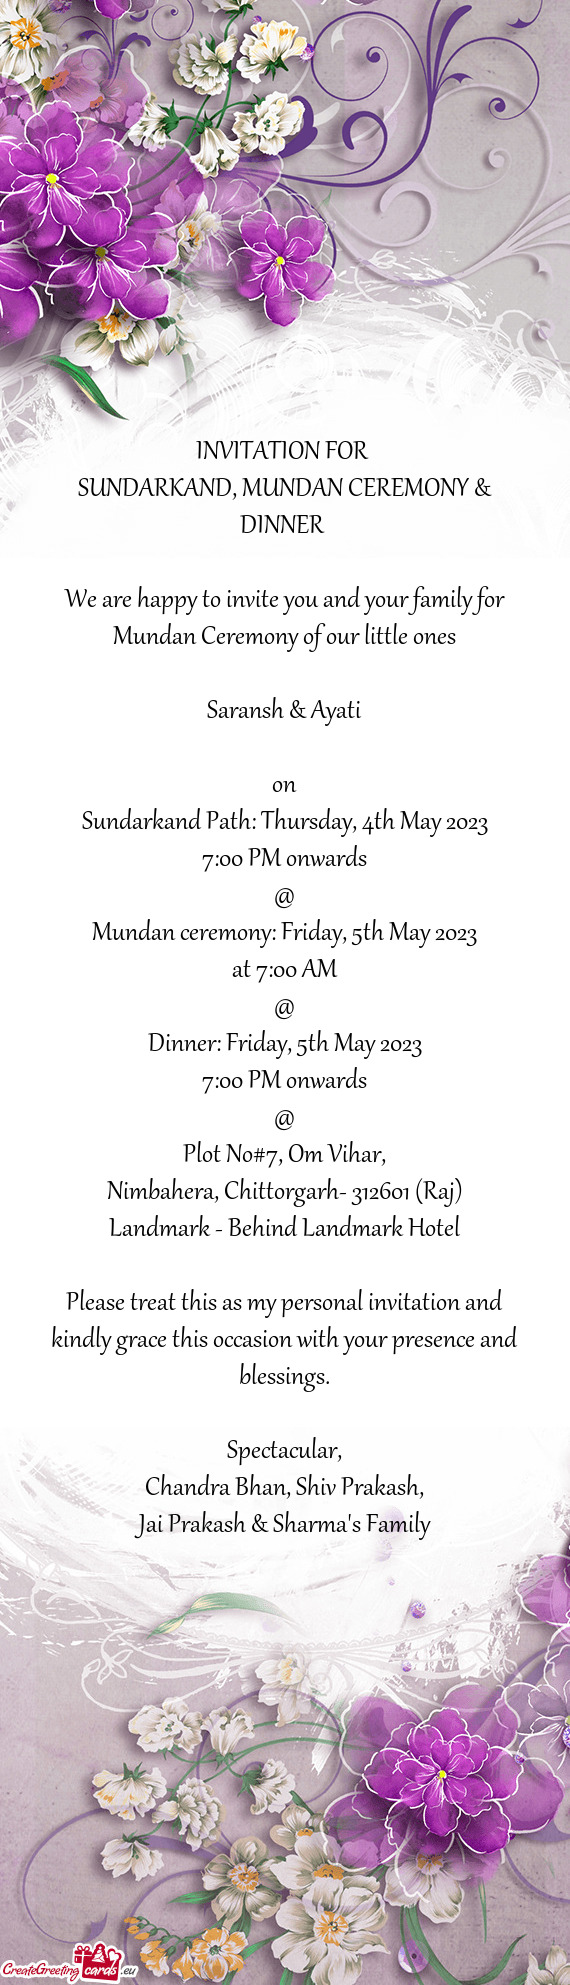 Sundarkand Path: Thursday, 4th May 2023